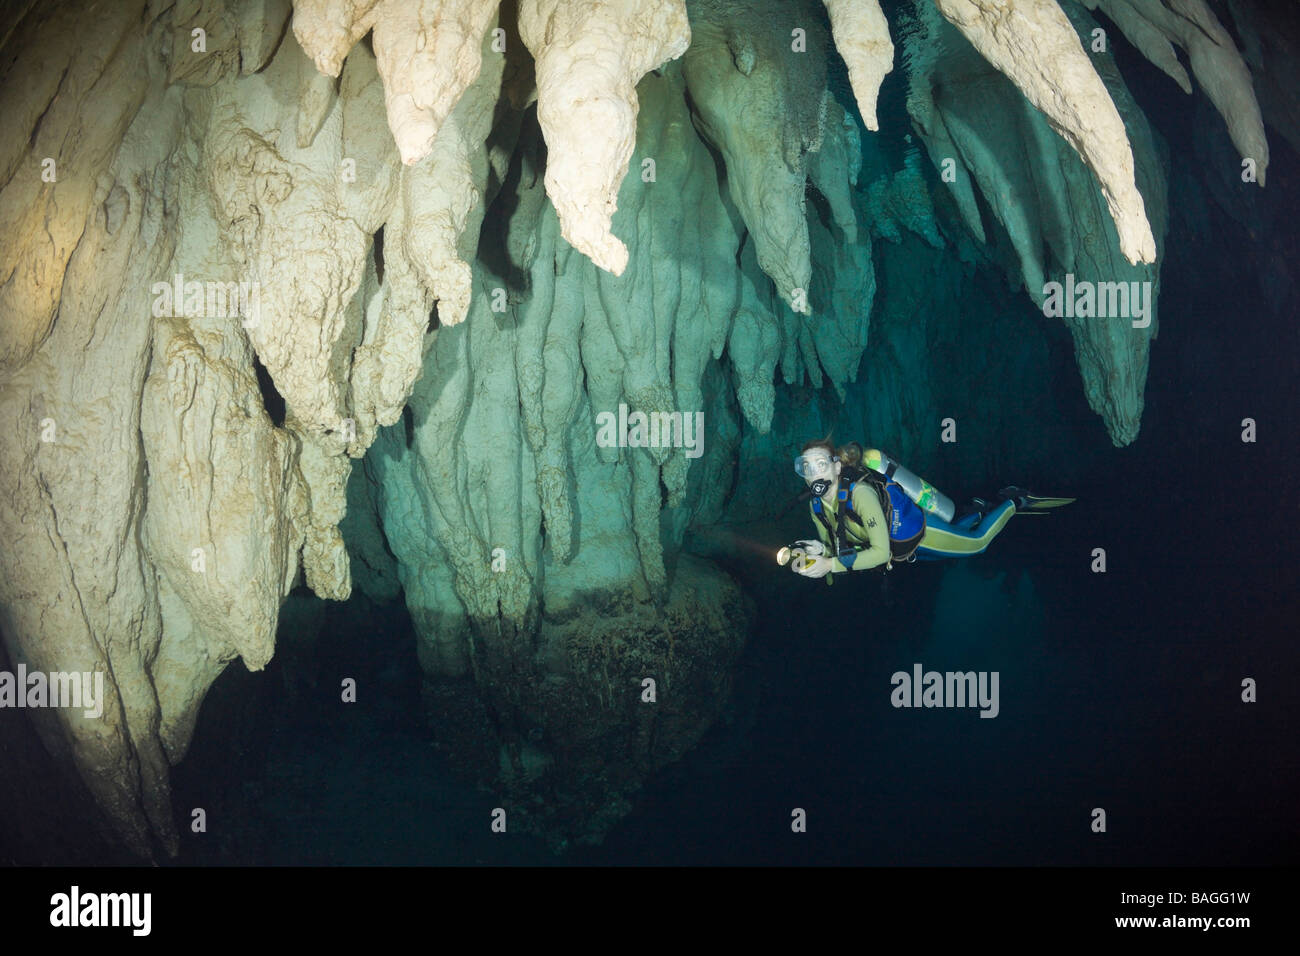 Lustre en plongeur grotte calcaire Micronésie Palau Banque D'Images